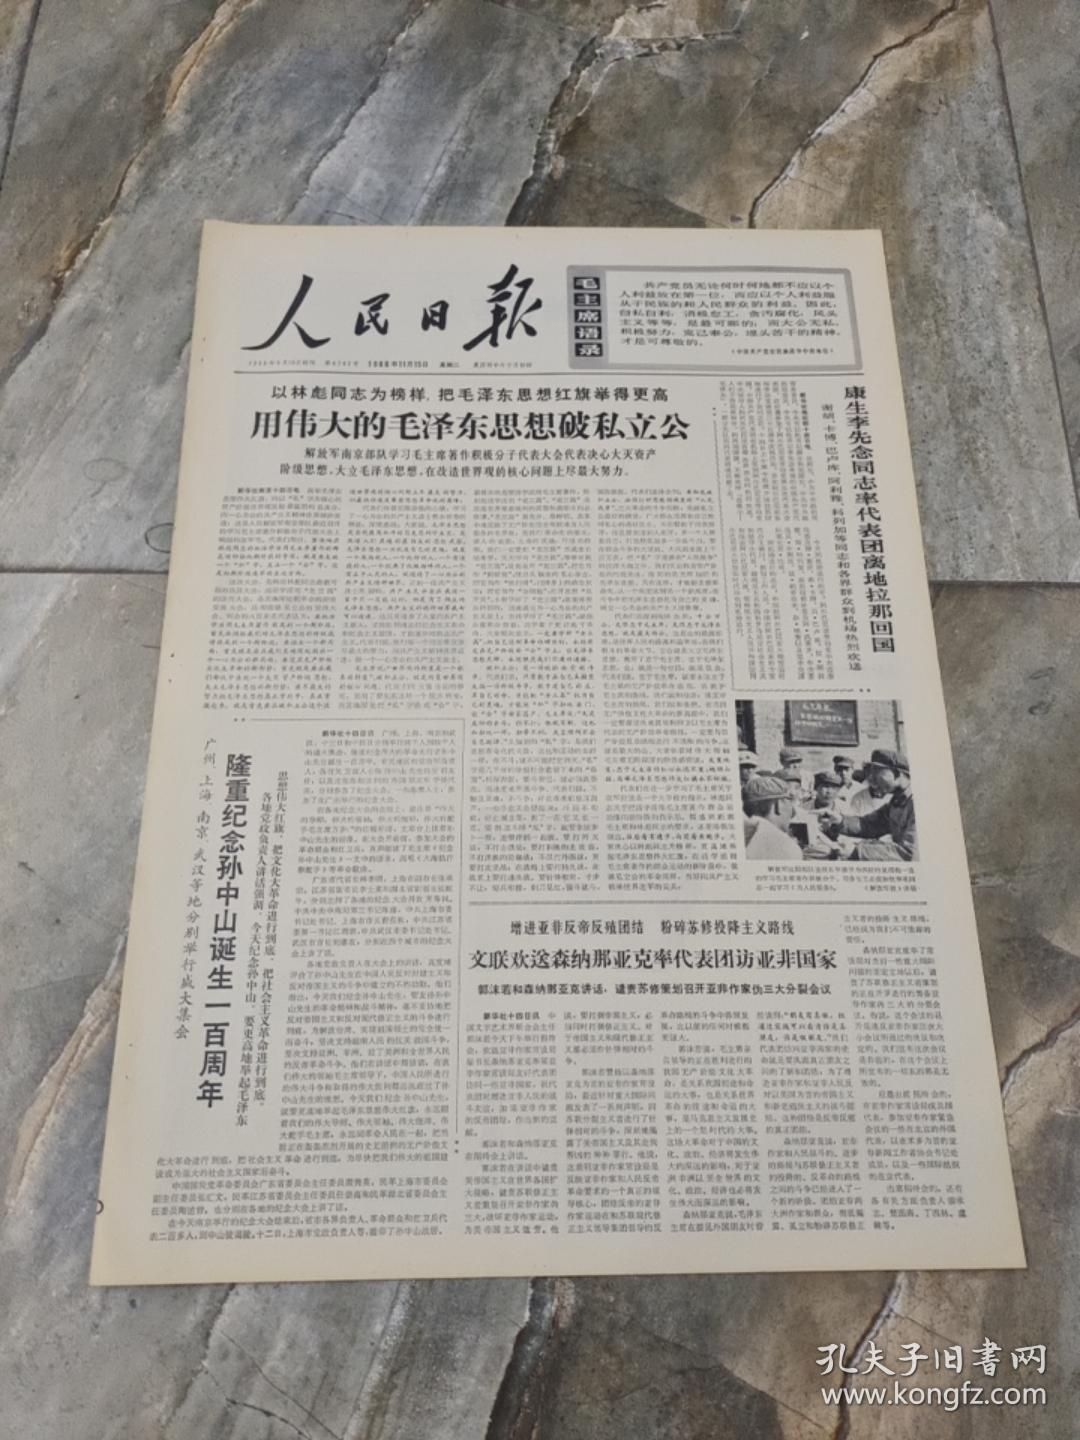 早期老报纸1966年11月15日《人民日报》6版用伟大的毛泽东思想破私立功